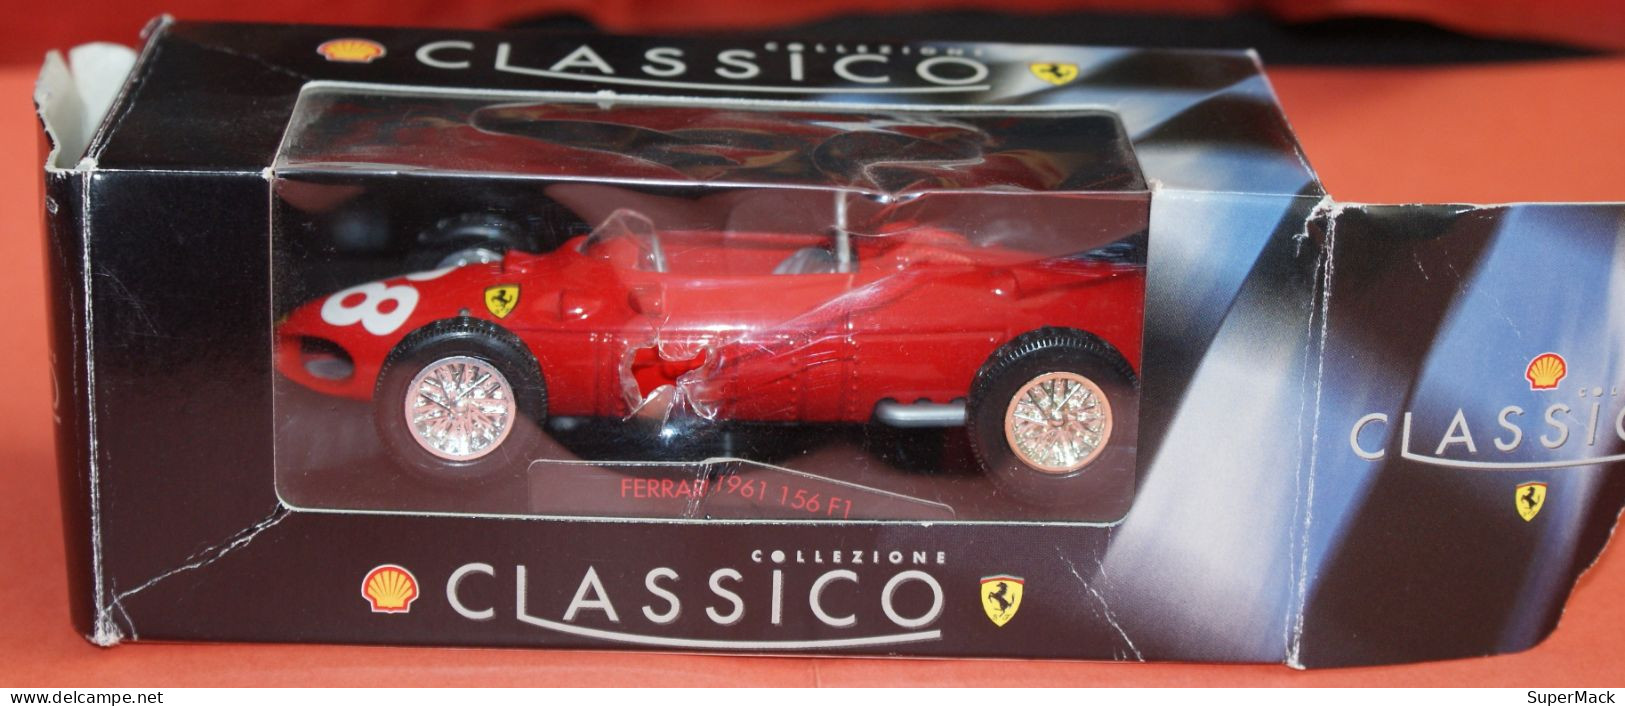 SHELL Classico Collezione - Ferrari 1961 156 F1 - Echelle 1:35 ### NEUVE ### - Schaal 1:32